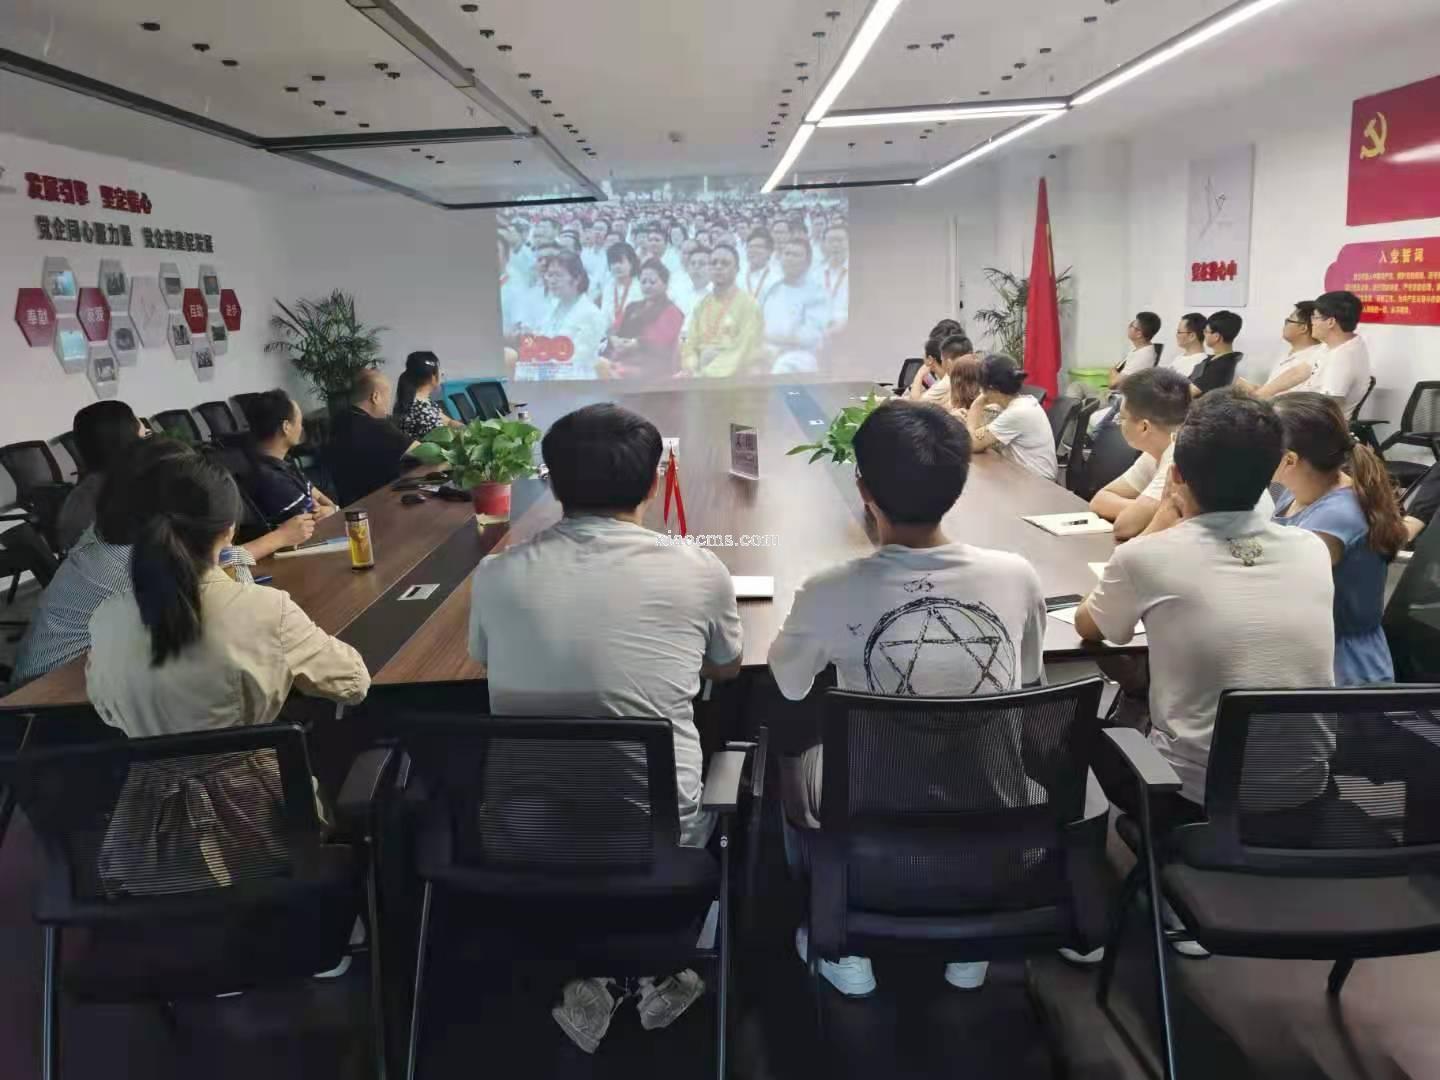 安徽亿川会计师事务所组织收看庆祝建党100周年大会